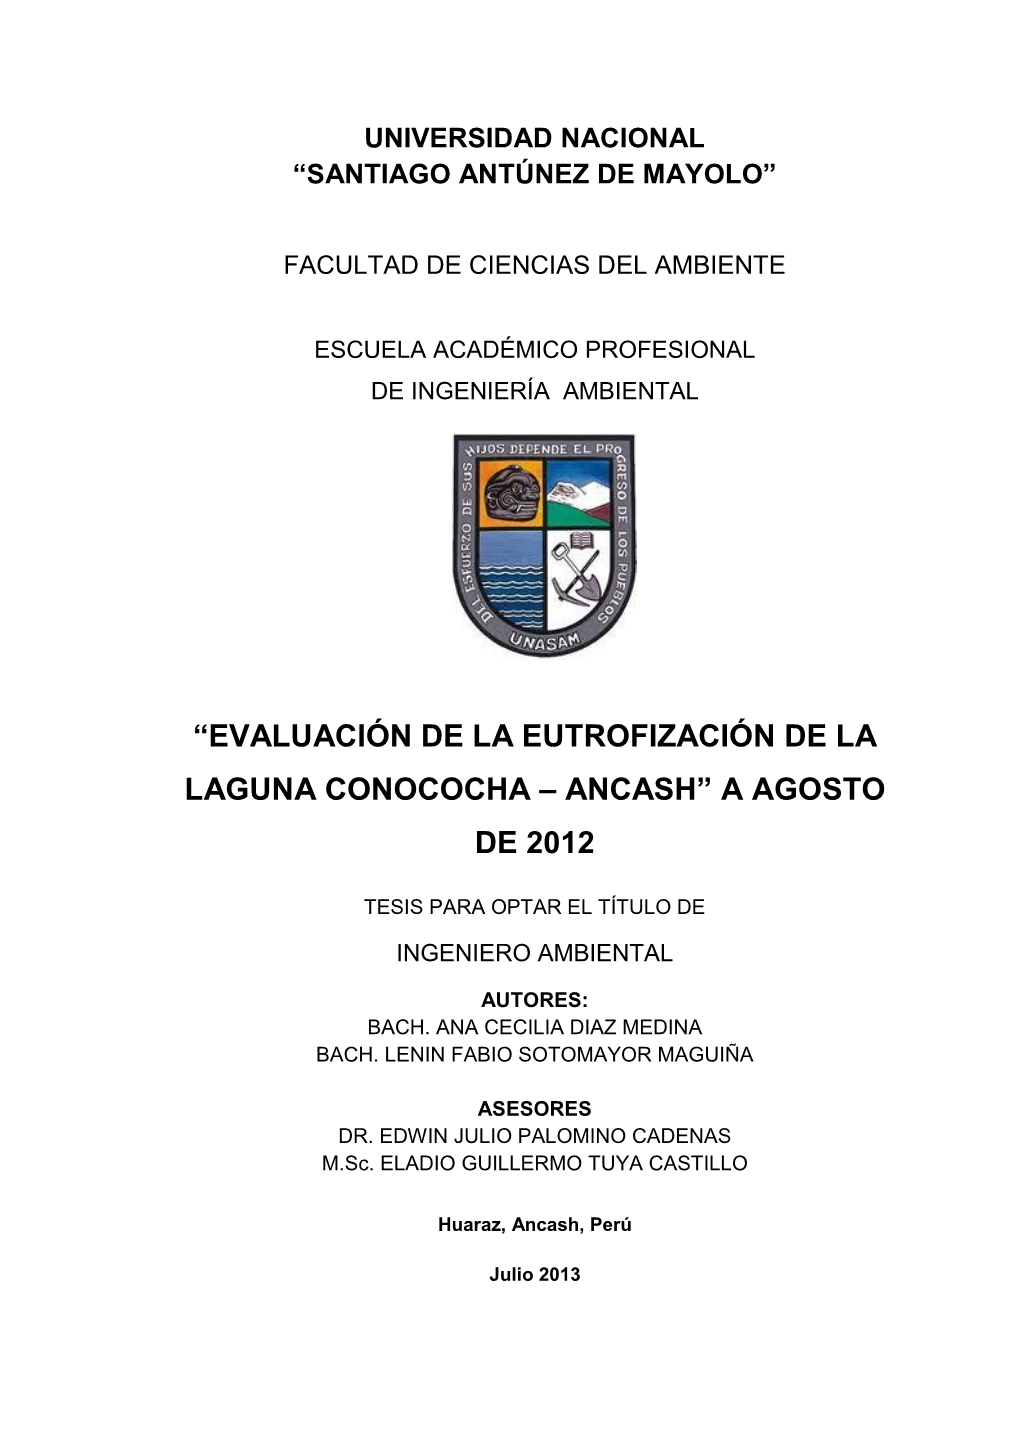 “Evaluación De La Eutrofización De La Laguna Conococha – Ancash” a Agosto De 2012